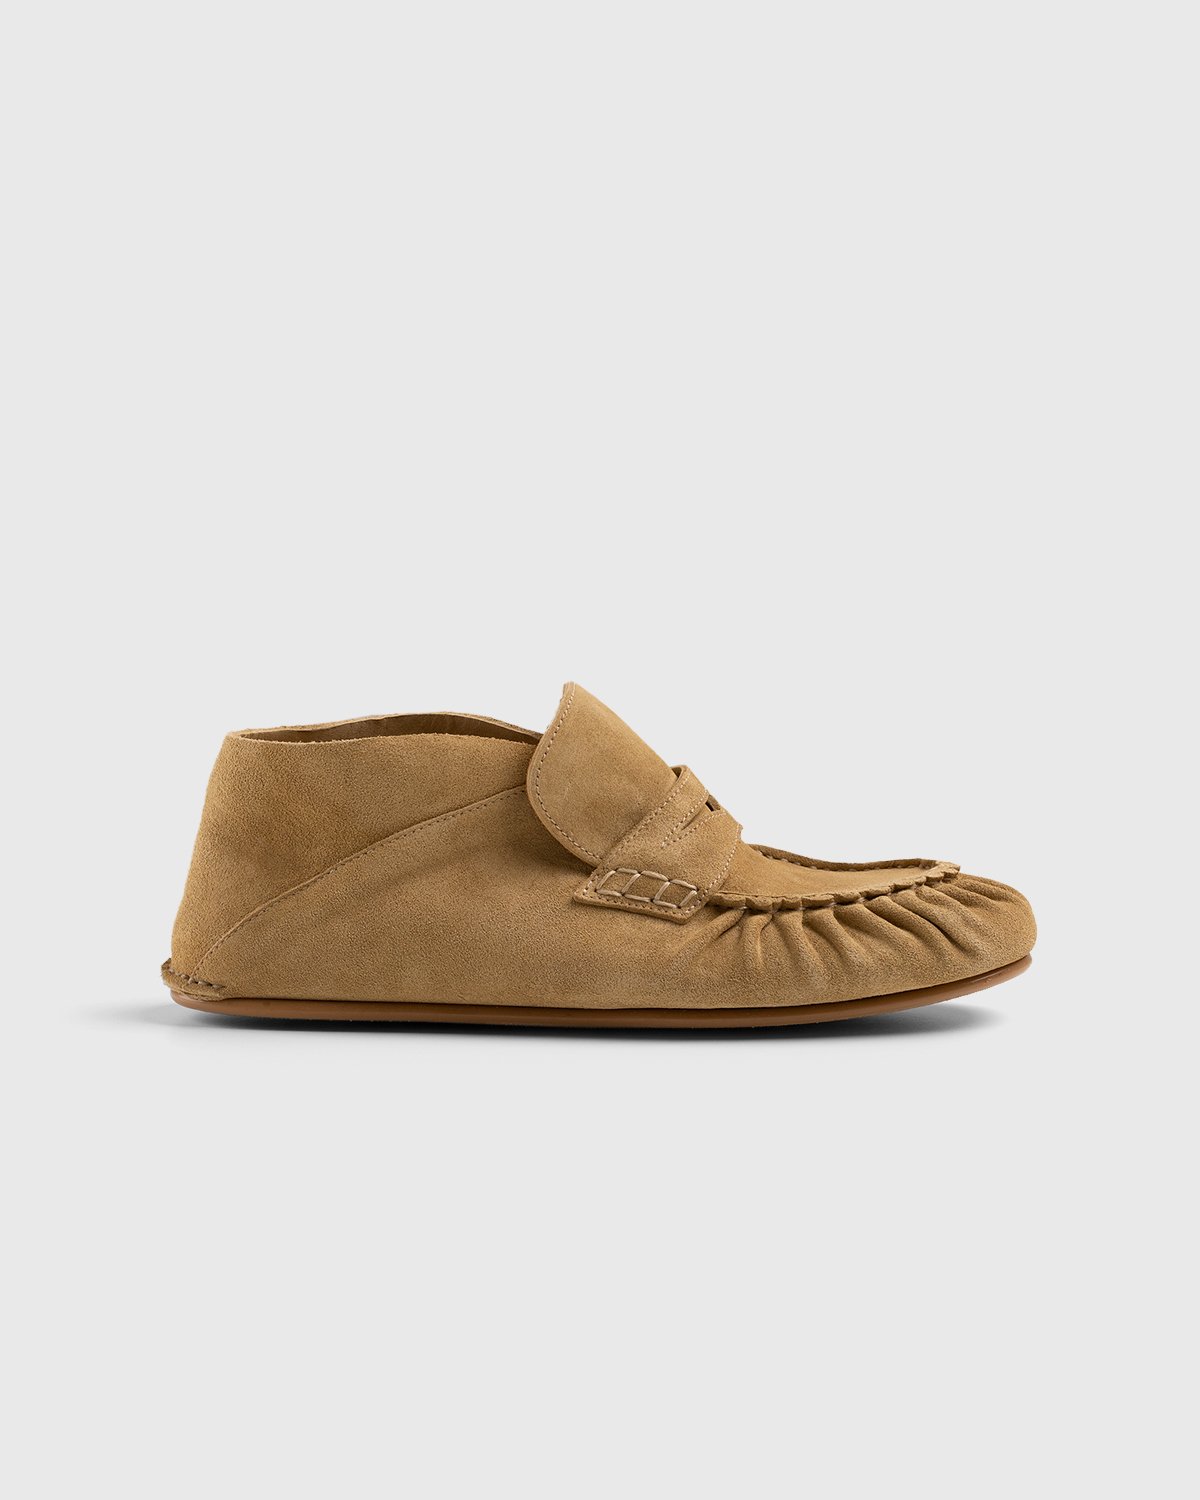 Loewe - Paula's Ibiza Suede Loafer Gold - Footwear - Brown - Image 1